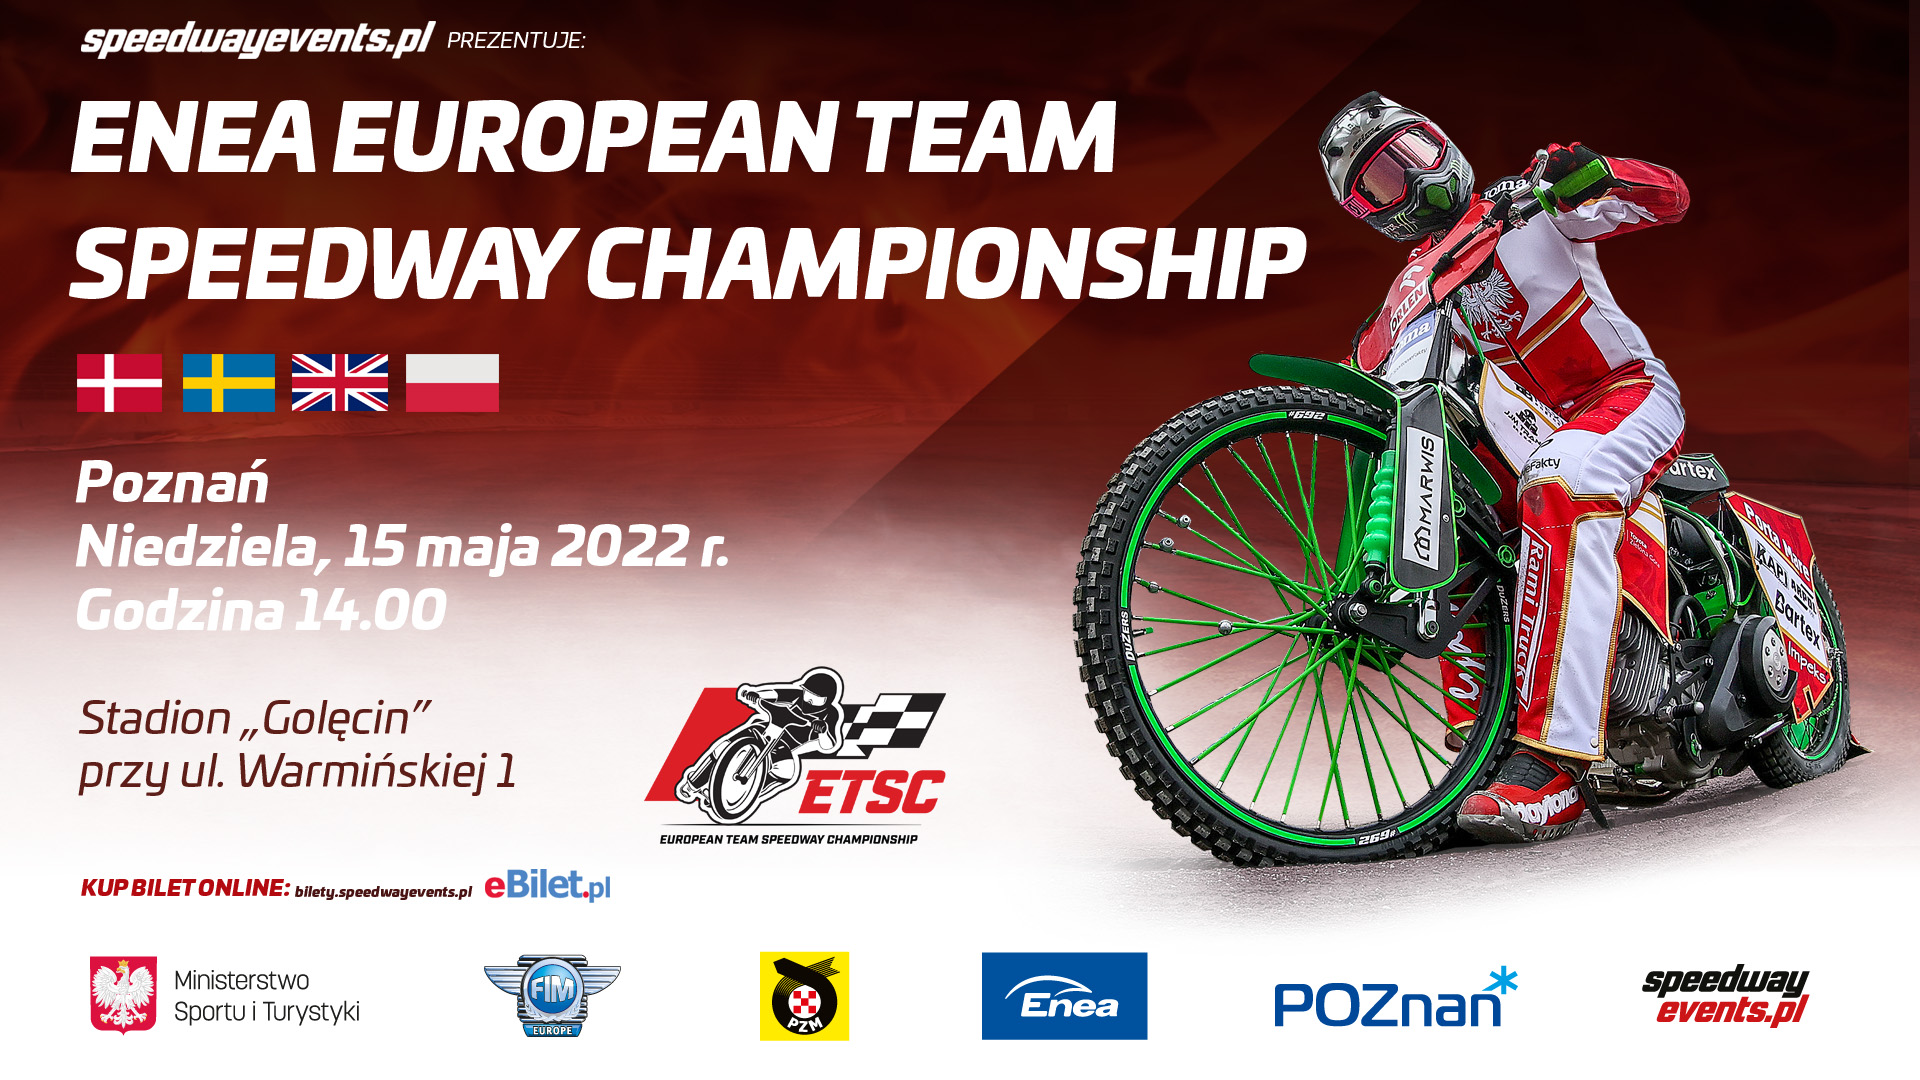 Znamy składy drużyn na ENEA European Team Speedway Championship